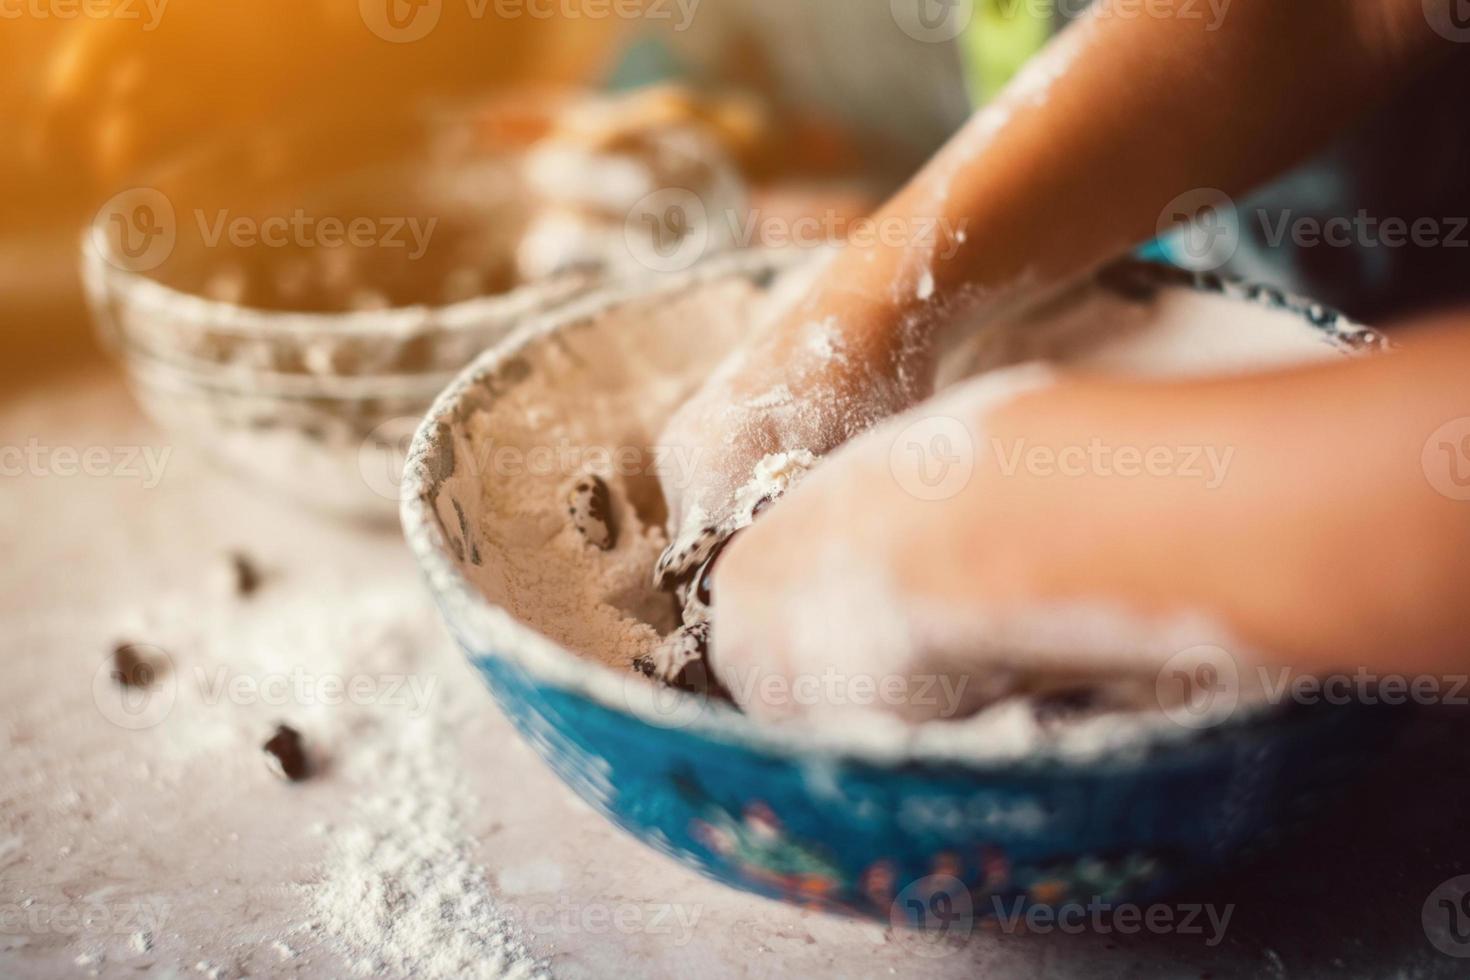 Girls hand in flour photo